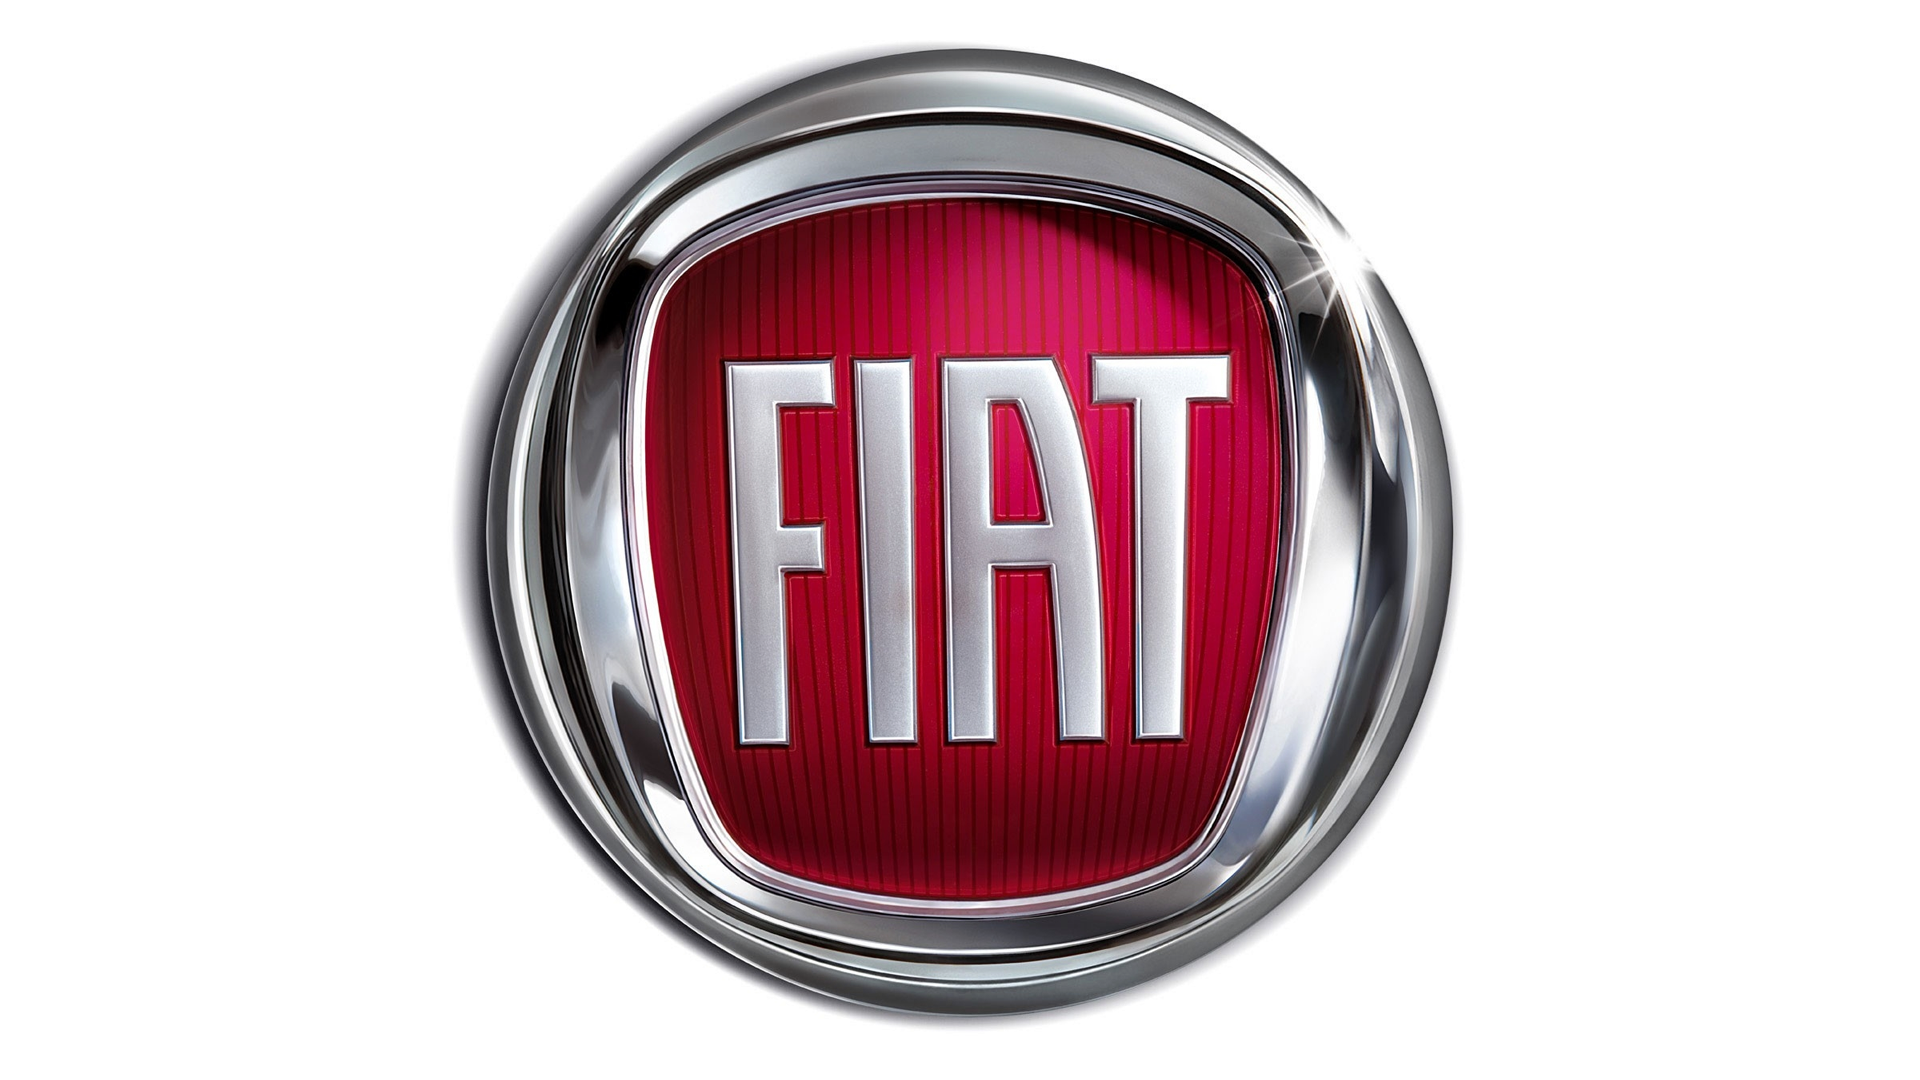 http://www.carlogos.org/logo/Fiat-logo-2006-1920x1080.png